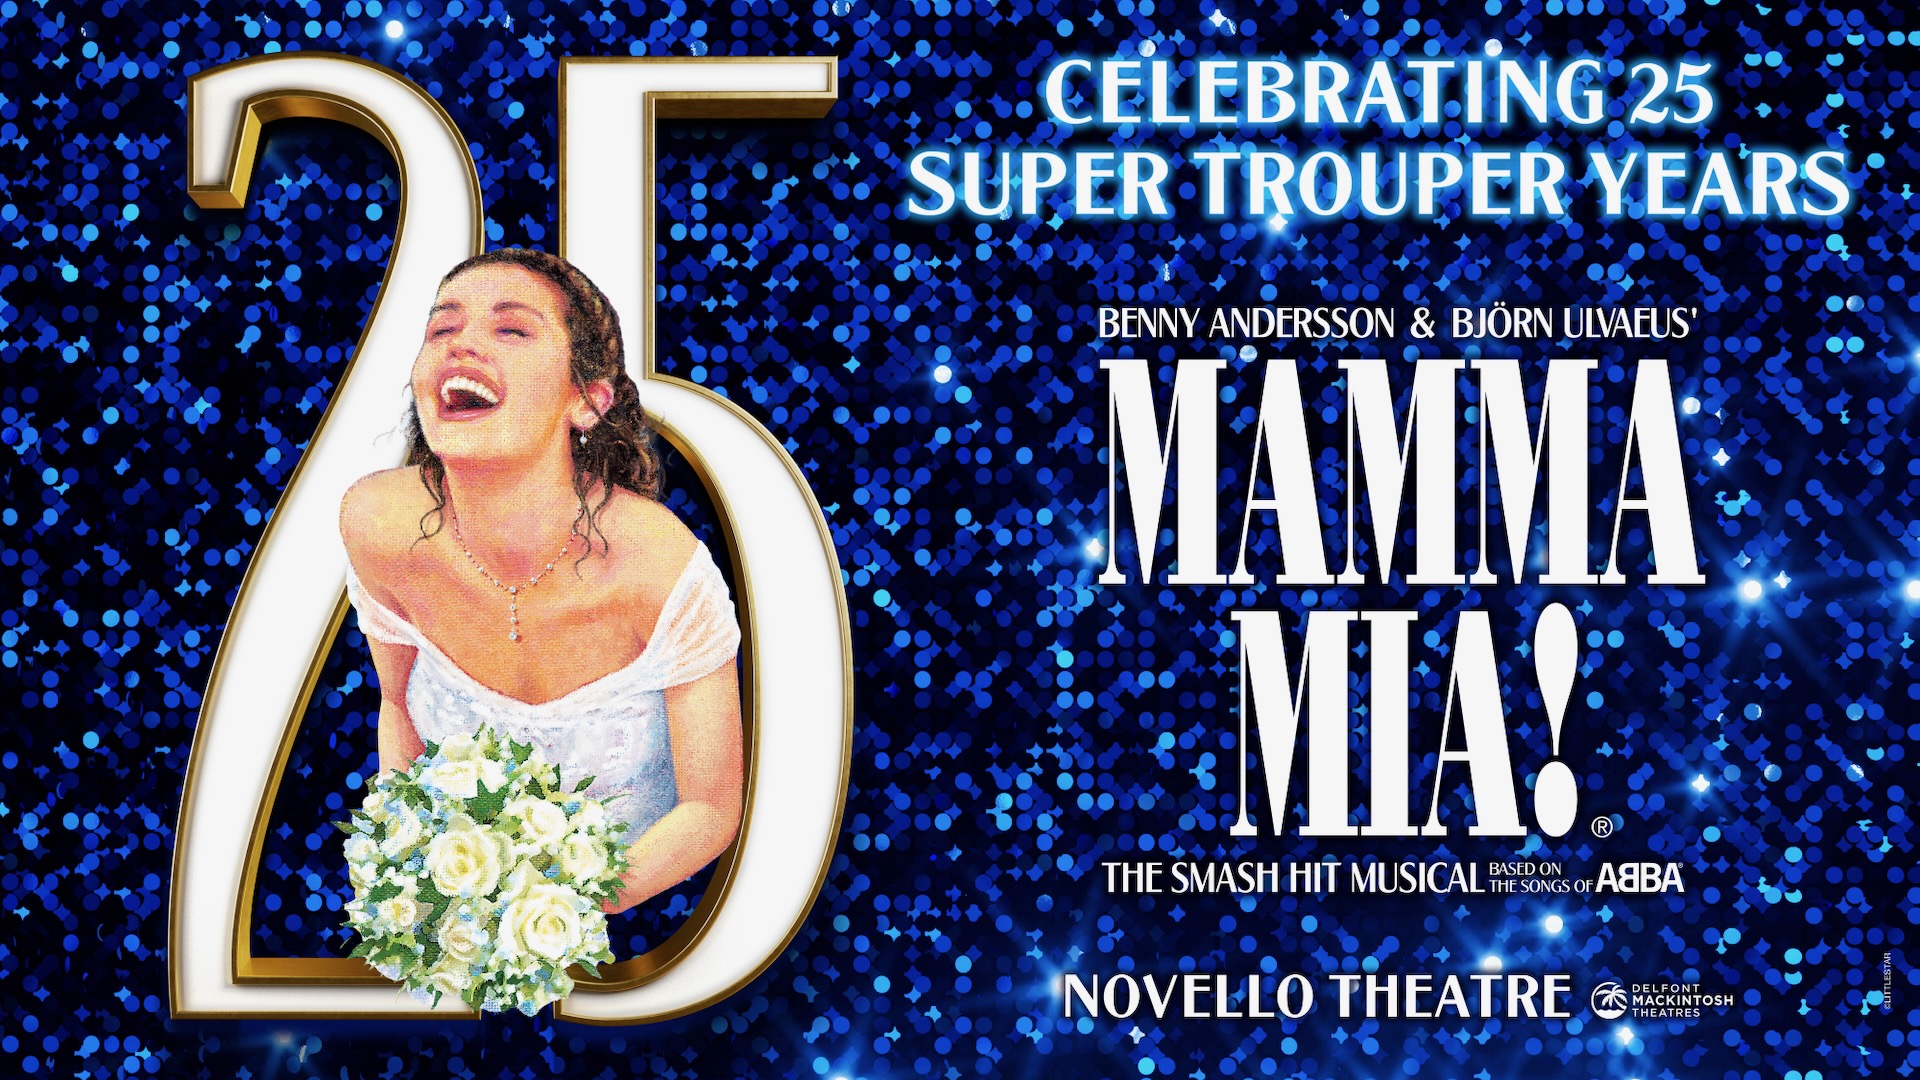 25th Mamma Mia! anniversary artwork